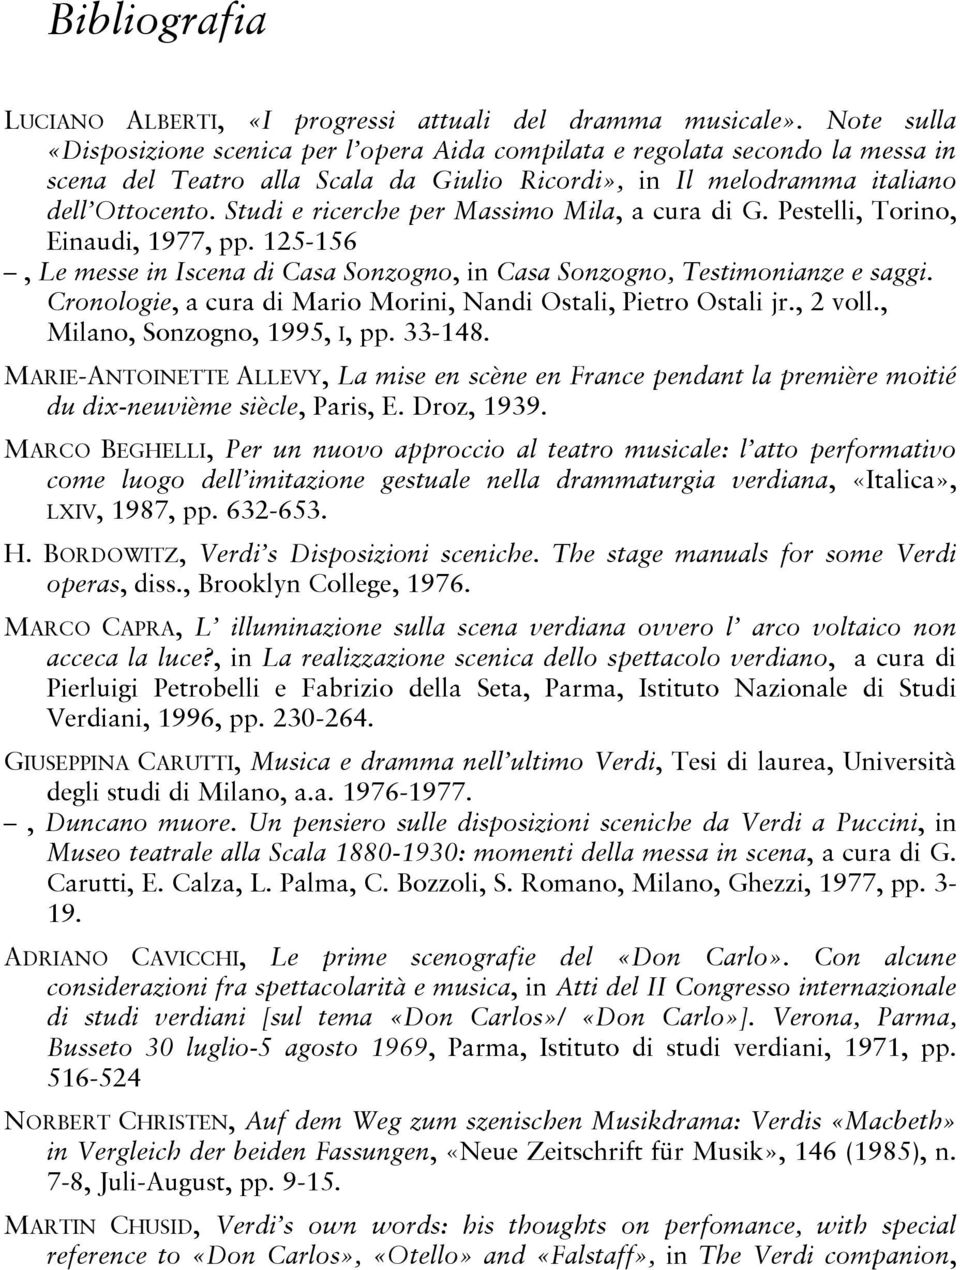 Studi e ricerche per Massimo Mila, a cura di G. Pestelli, Torino, Einaudi, 1977, pp. 125-156, Le messe in Iscena di Casa Sonzogno, in Casa Sonzogno, Testimonianze e saggi.